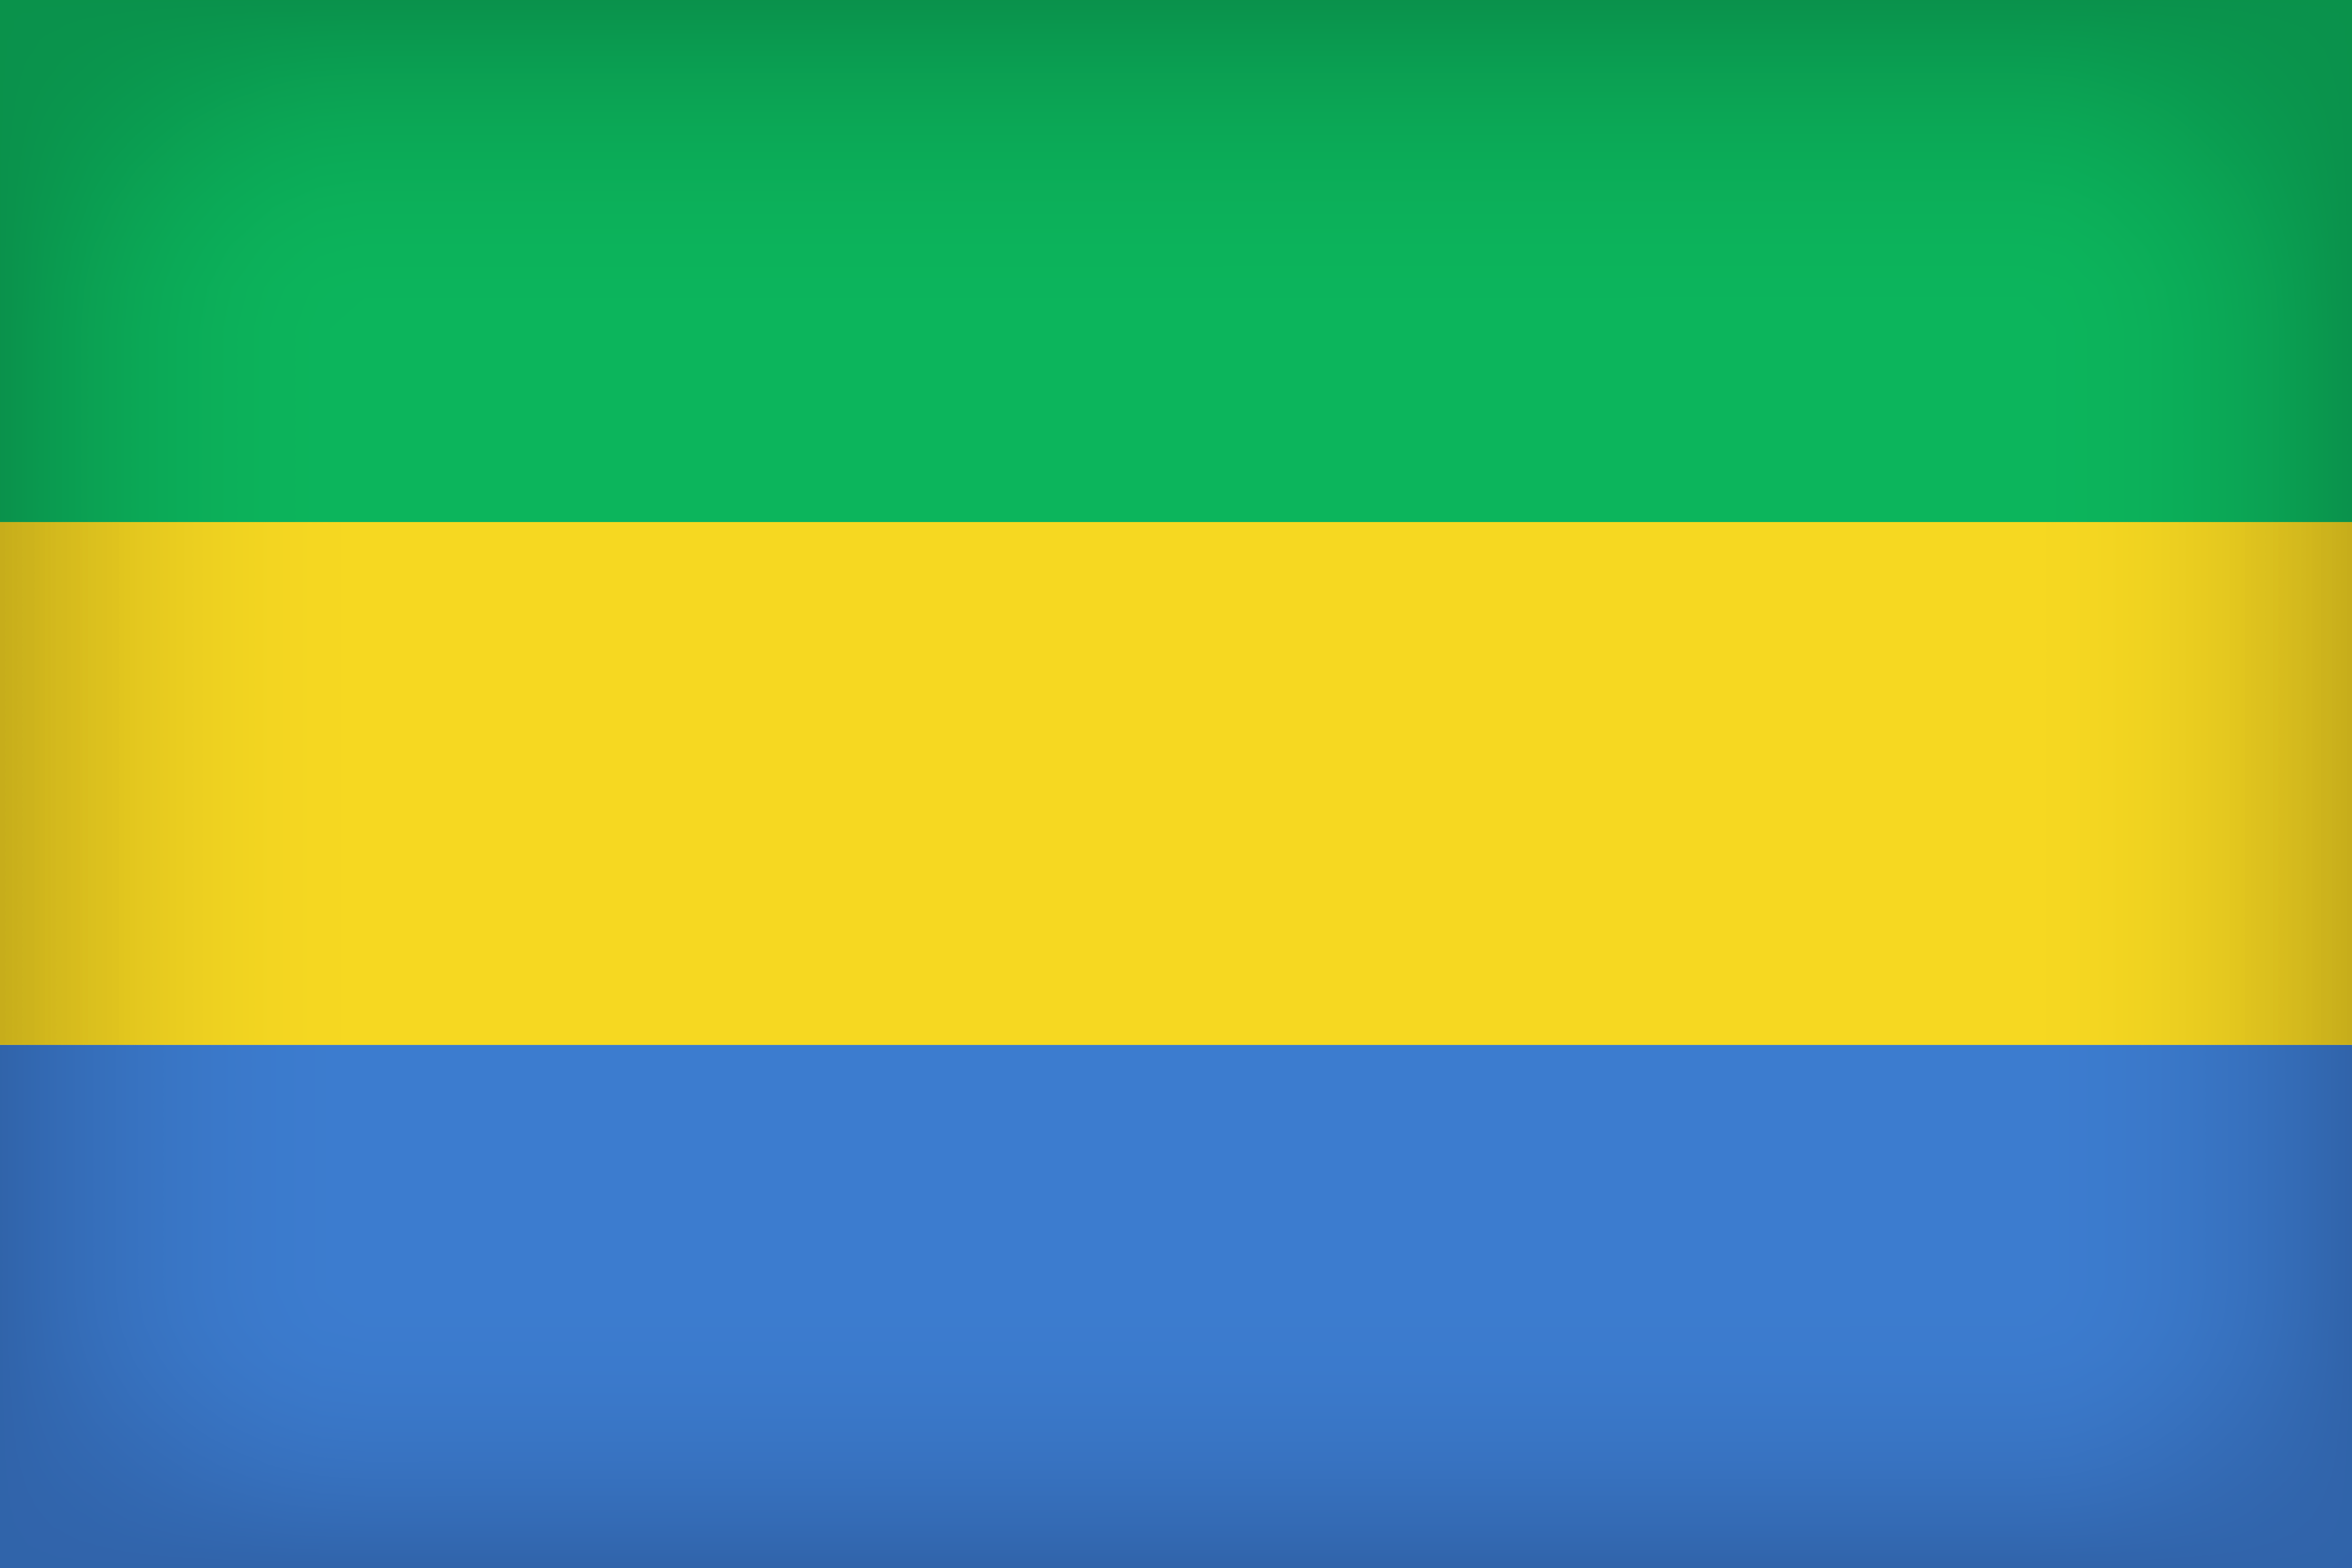 Gabon Large Flag Quality Image